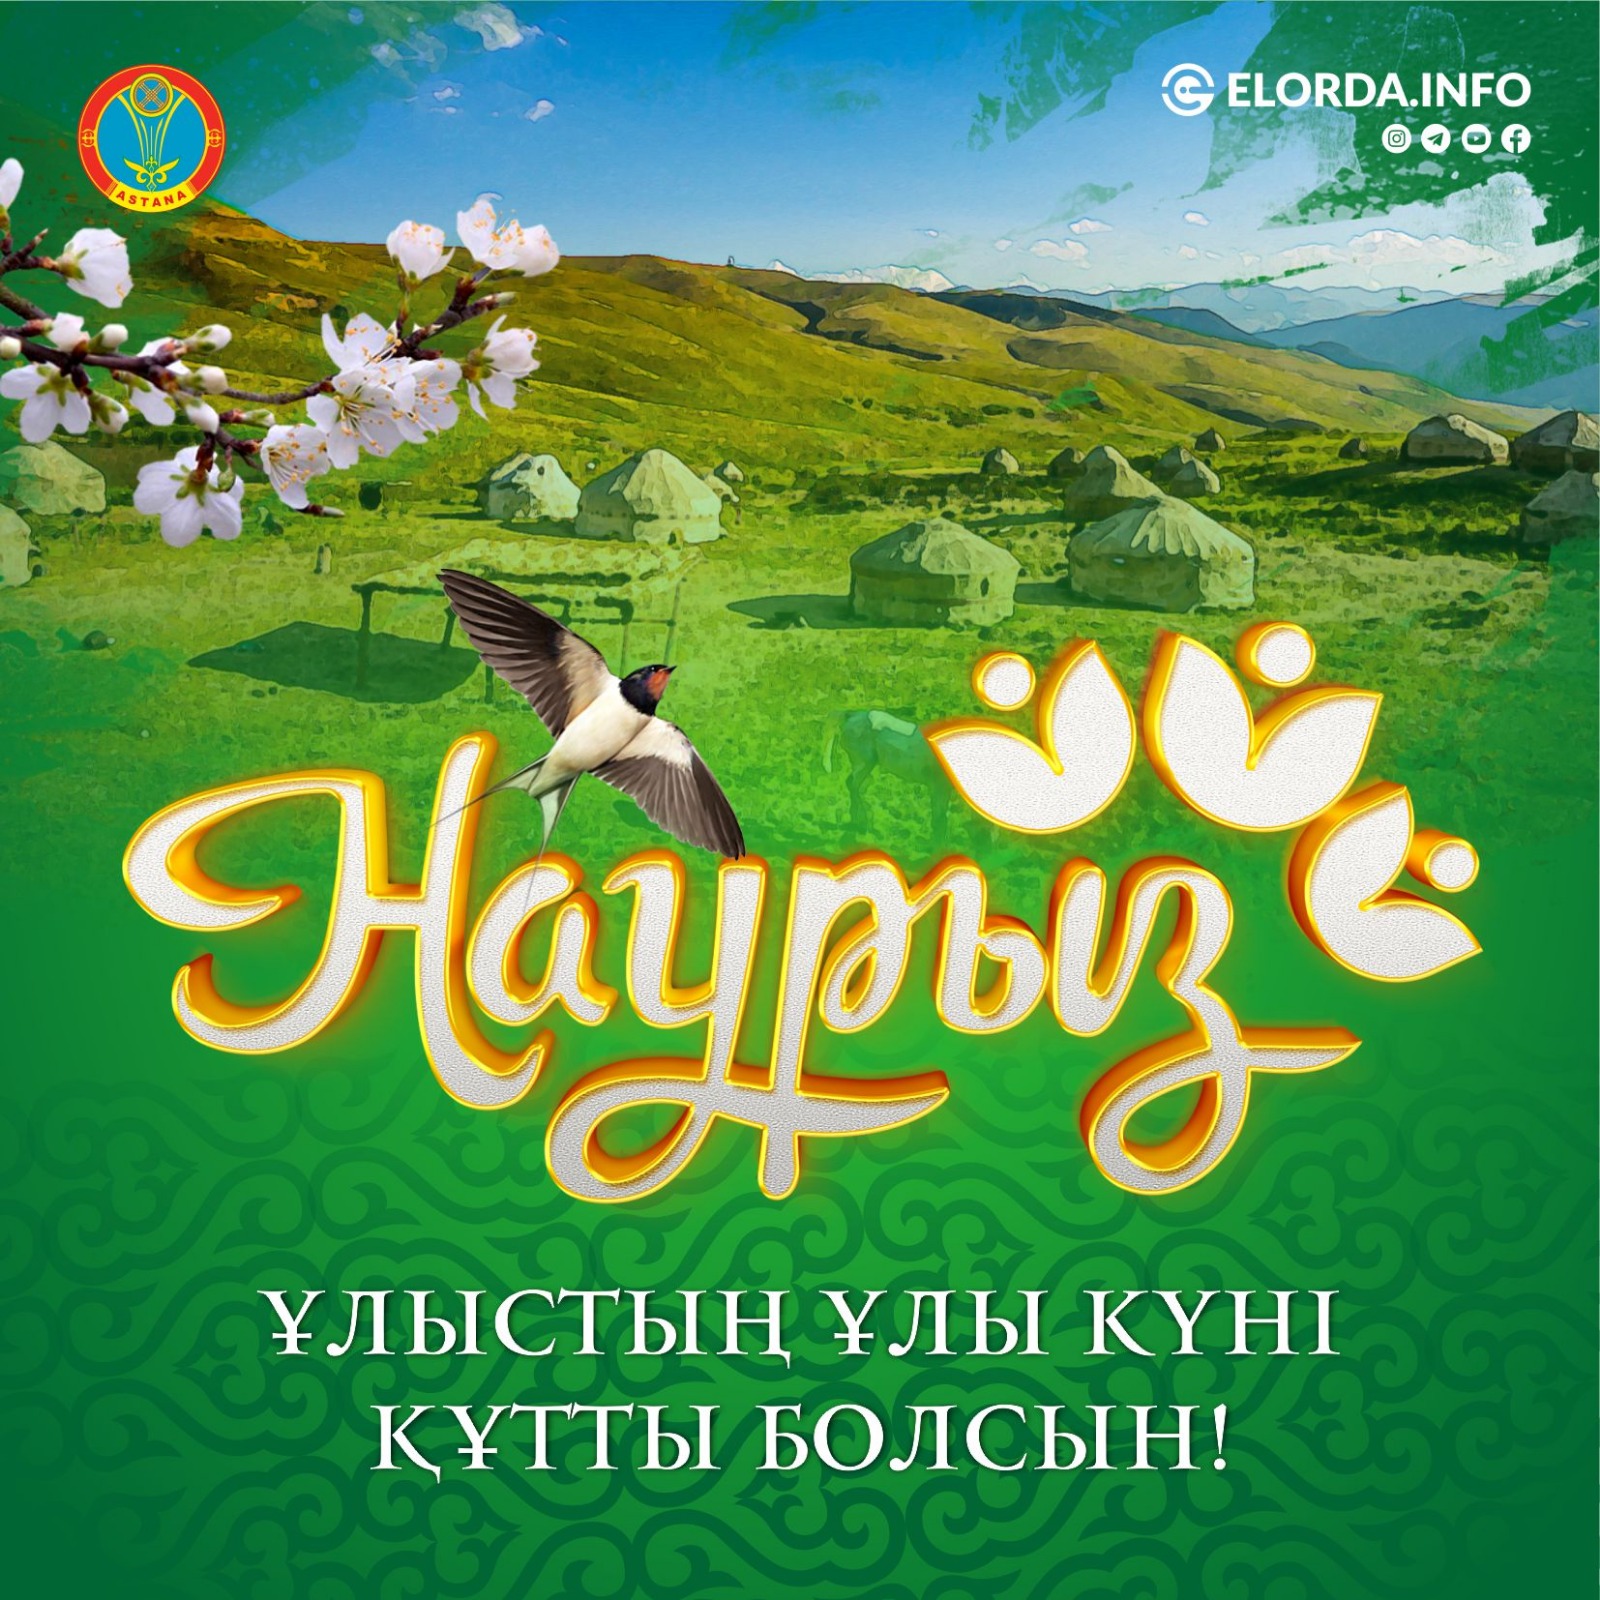 Дорогие казахстанцы! Искренне поздравляем вас с прекрасным весенним праздником Наурыз!